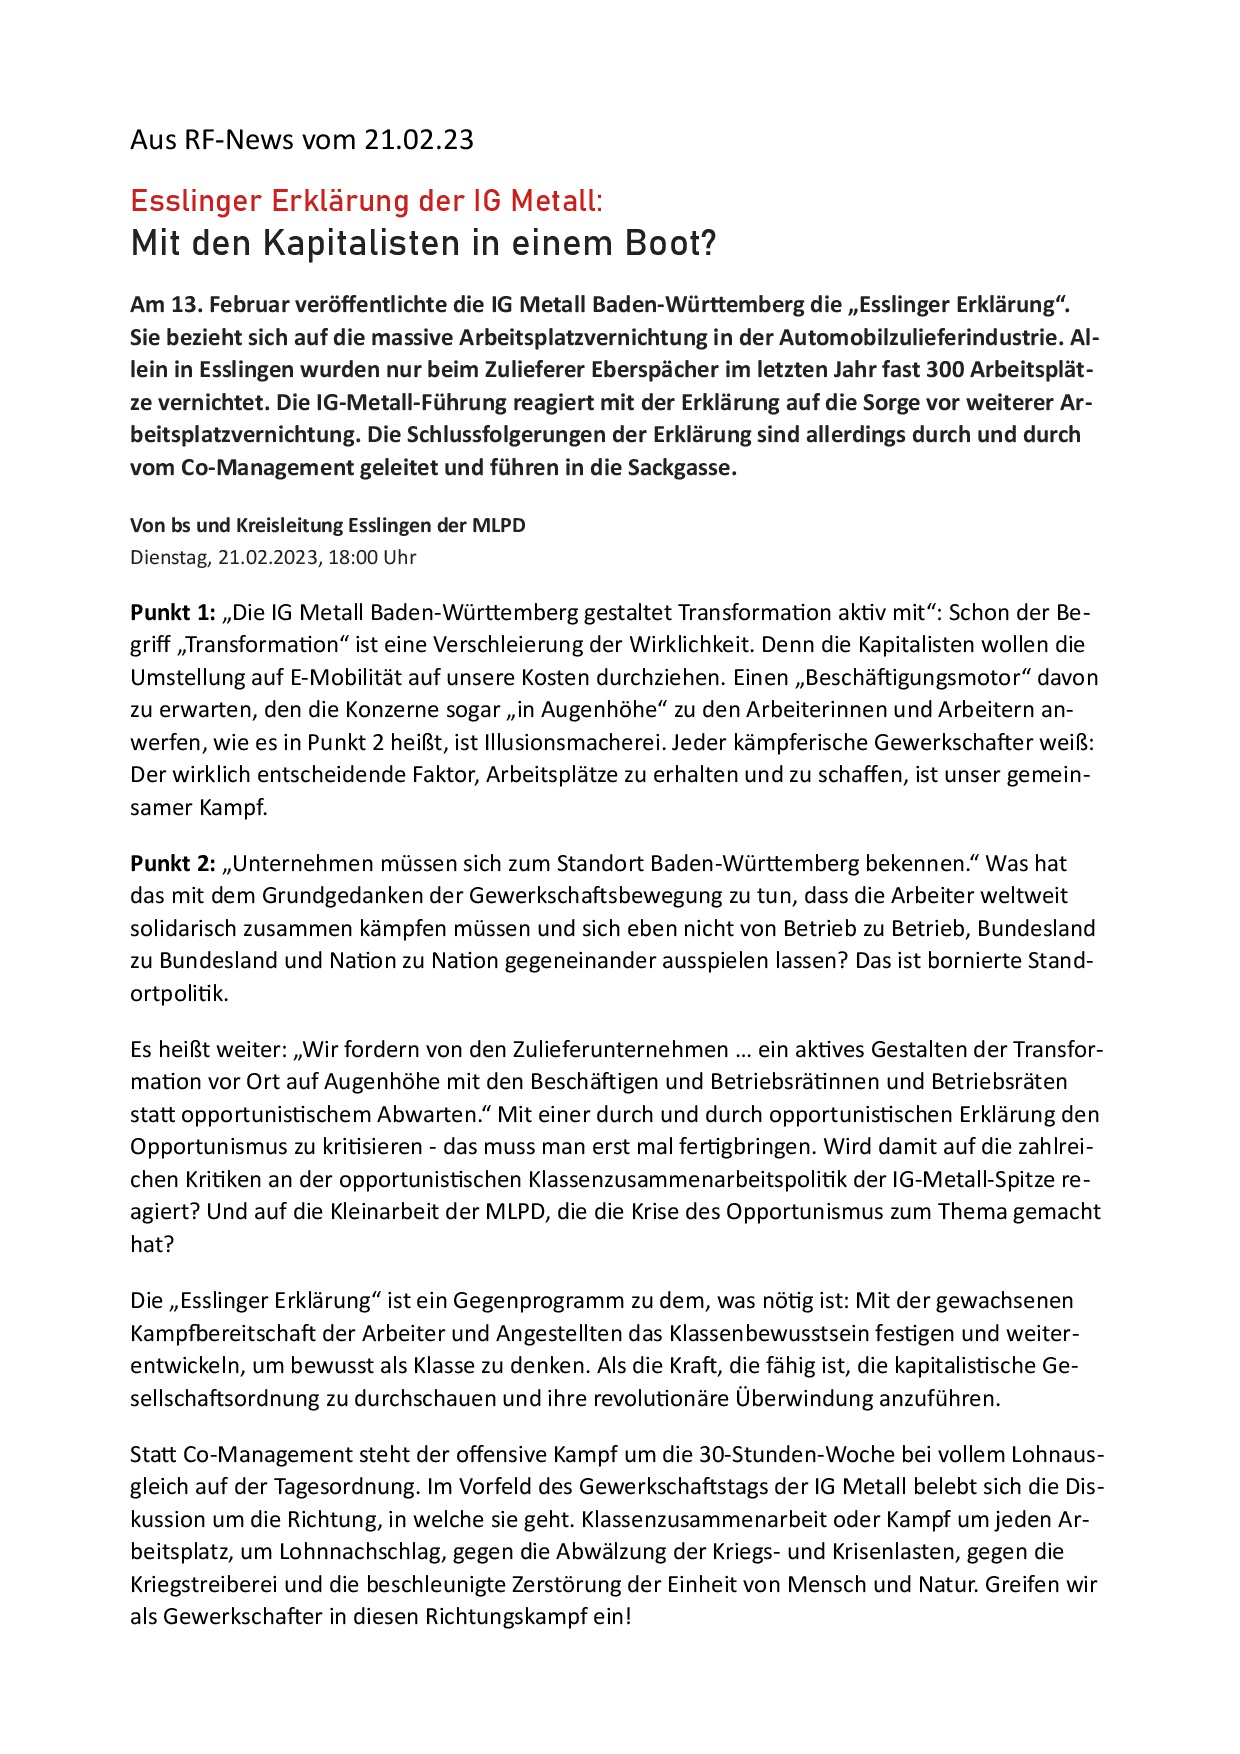 Zur Esslinger Erklärung der IGM